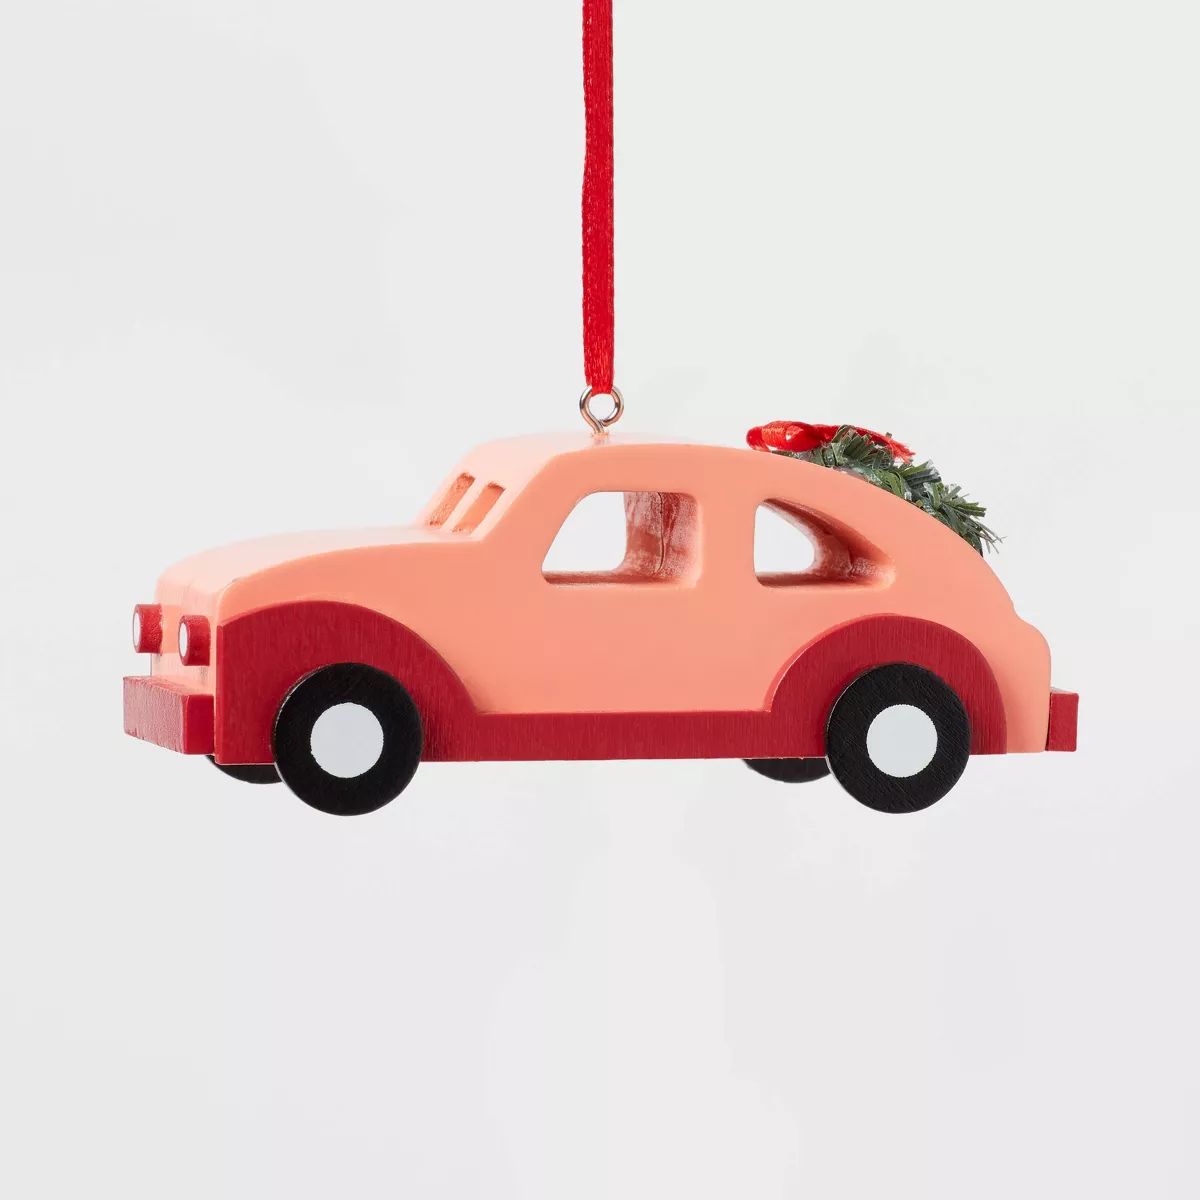 Wood Car with Wreath Christmas Tree Ornament Orange - Wondershop™ | Target